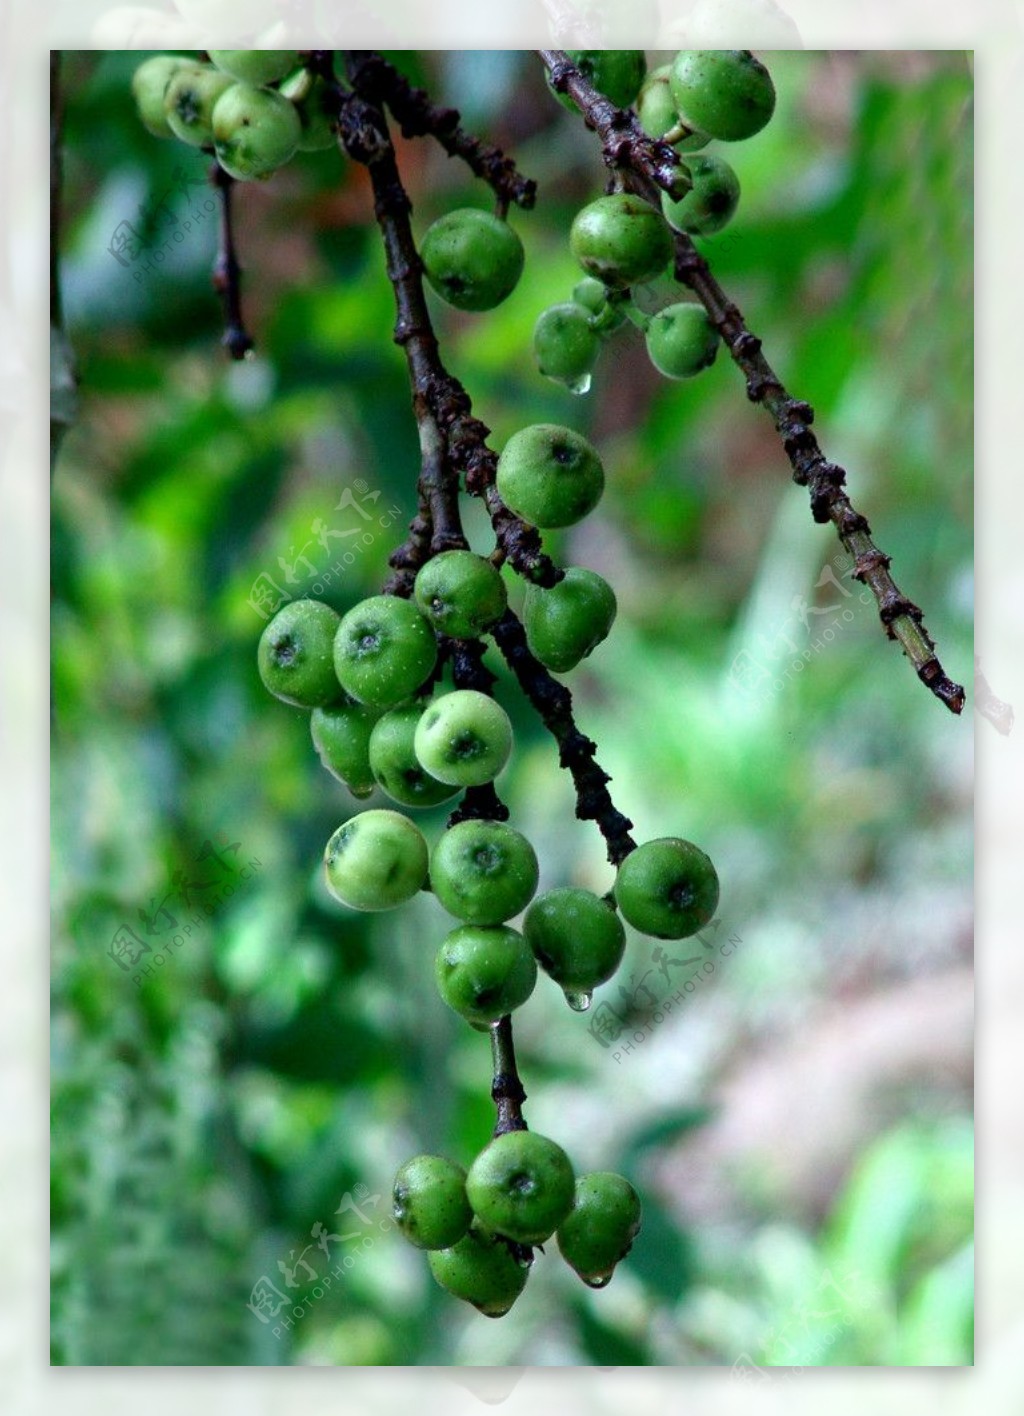 榕属racemosa水果或群图 库存图片. 图片 包括有 生态学, 种子, 长毛, 健康, 绿色, 森林 - 210223295